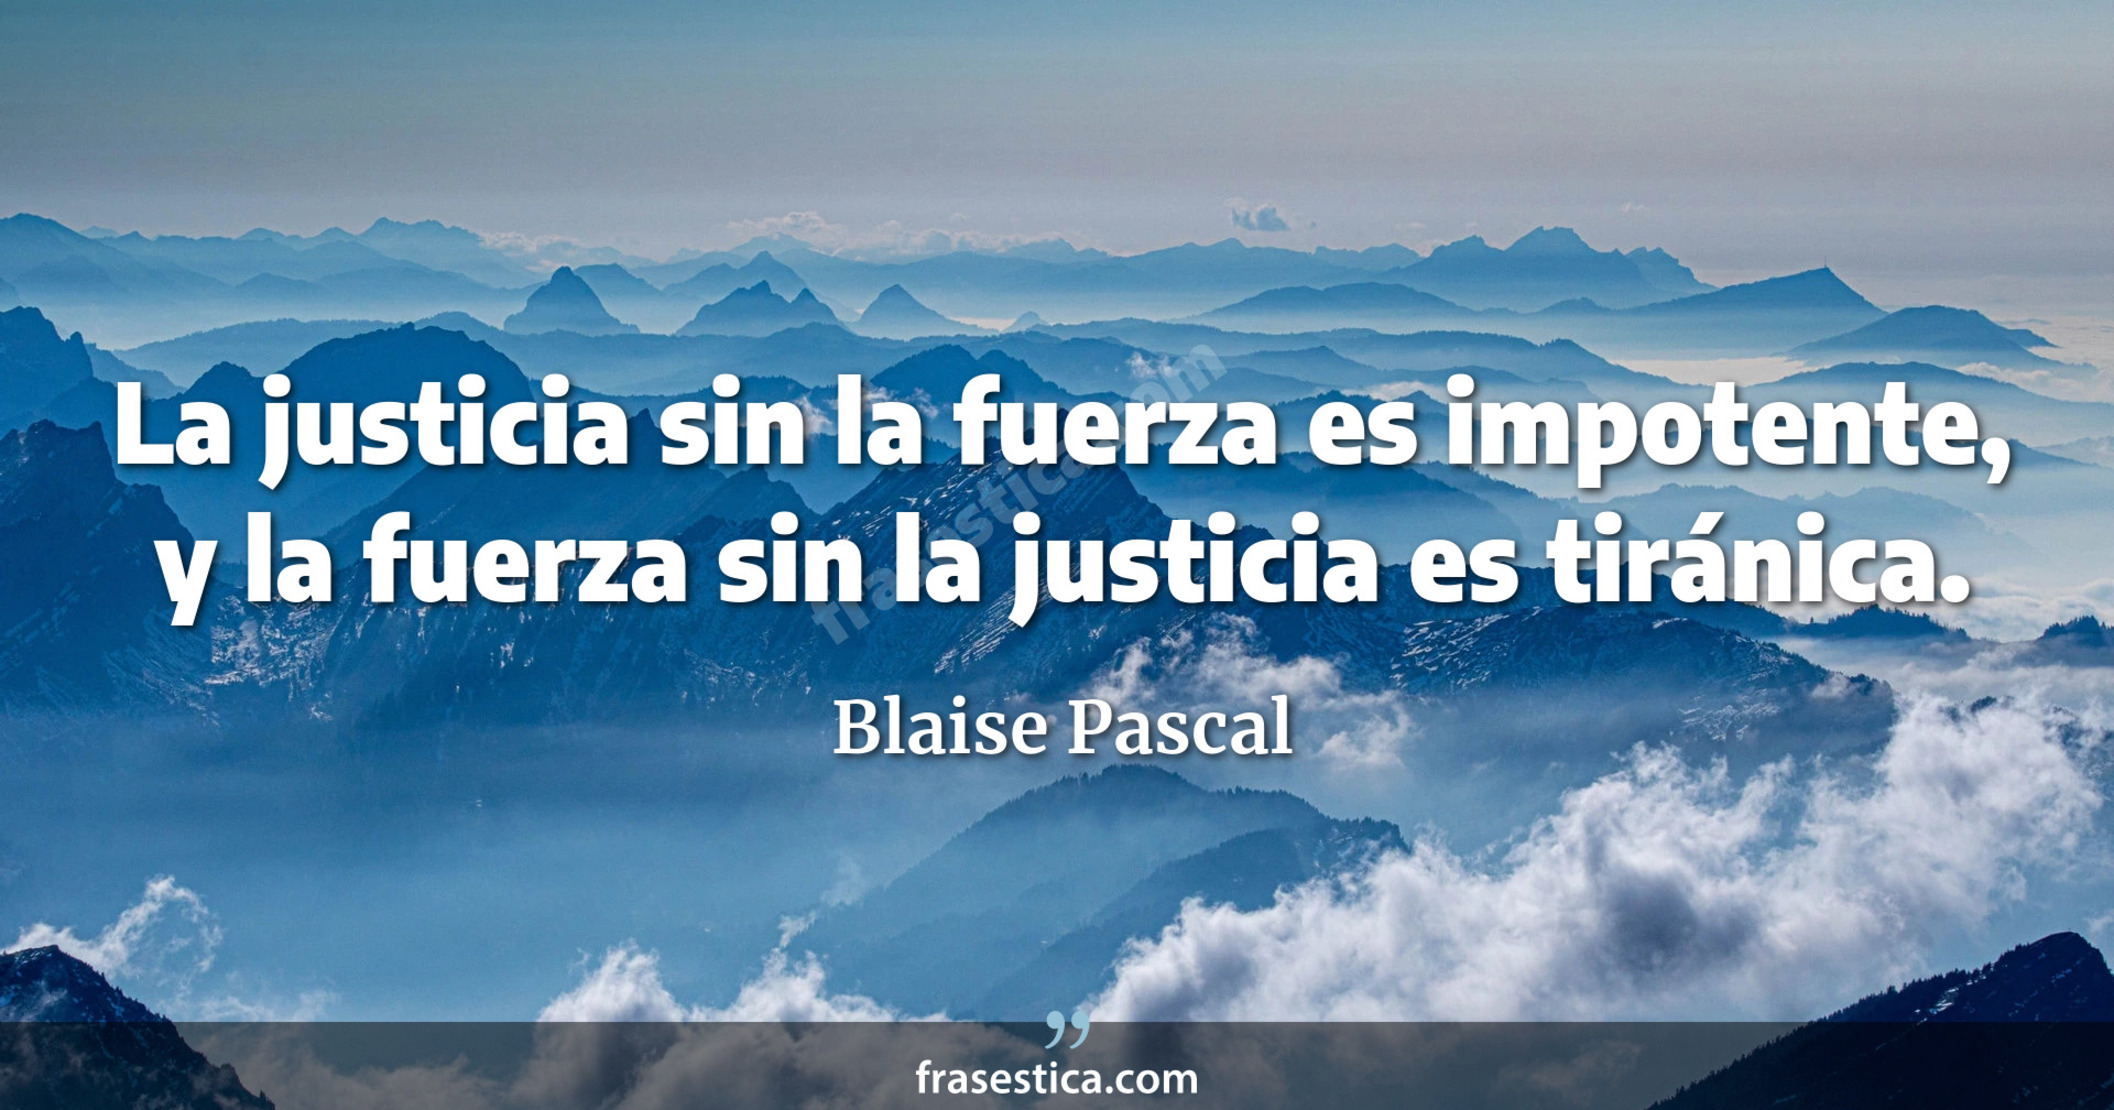 La justicia sin la fuerza es impotente, y la fuerza sin la justicia es tiránica. - Blaise Pascal